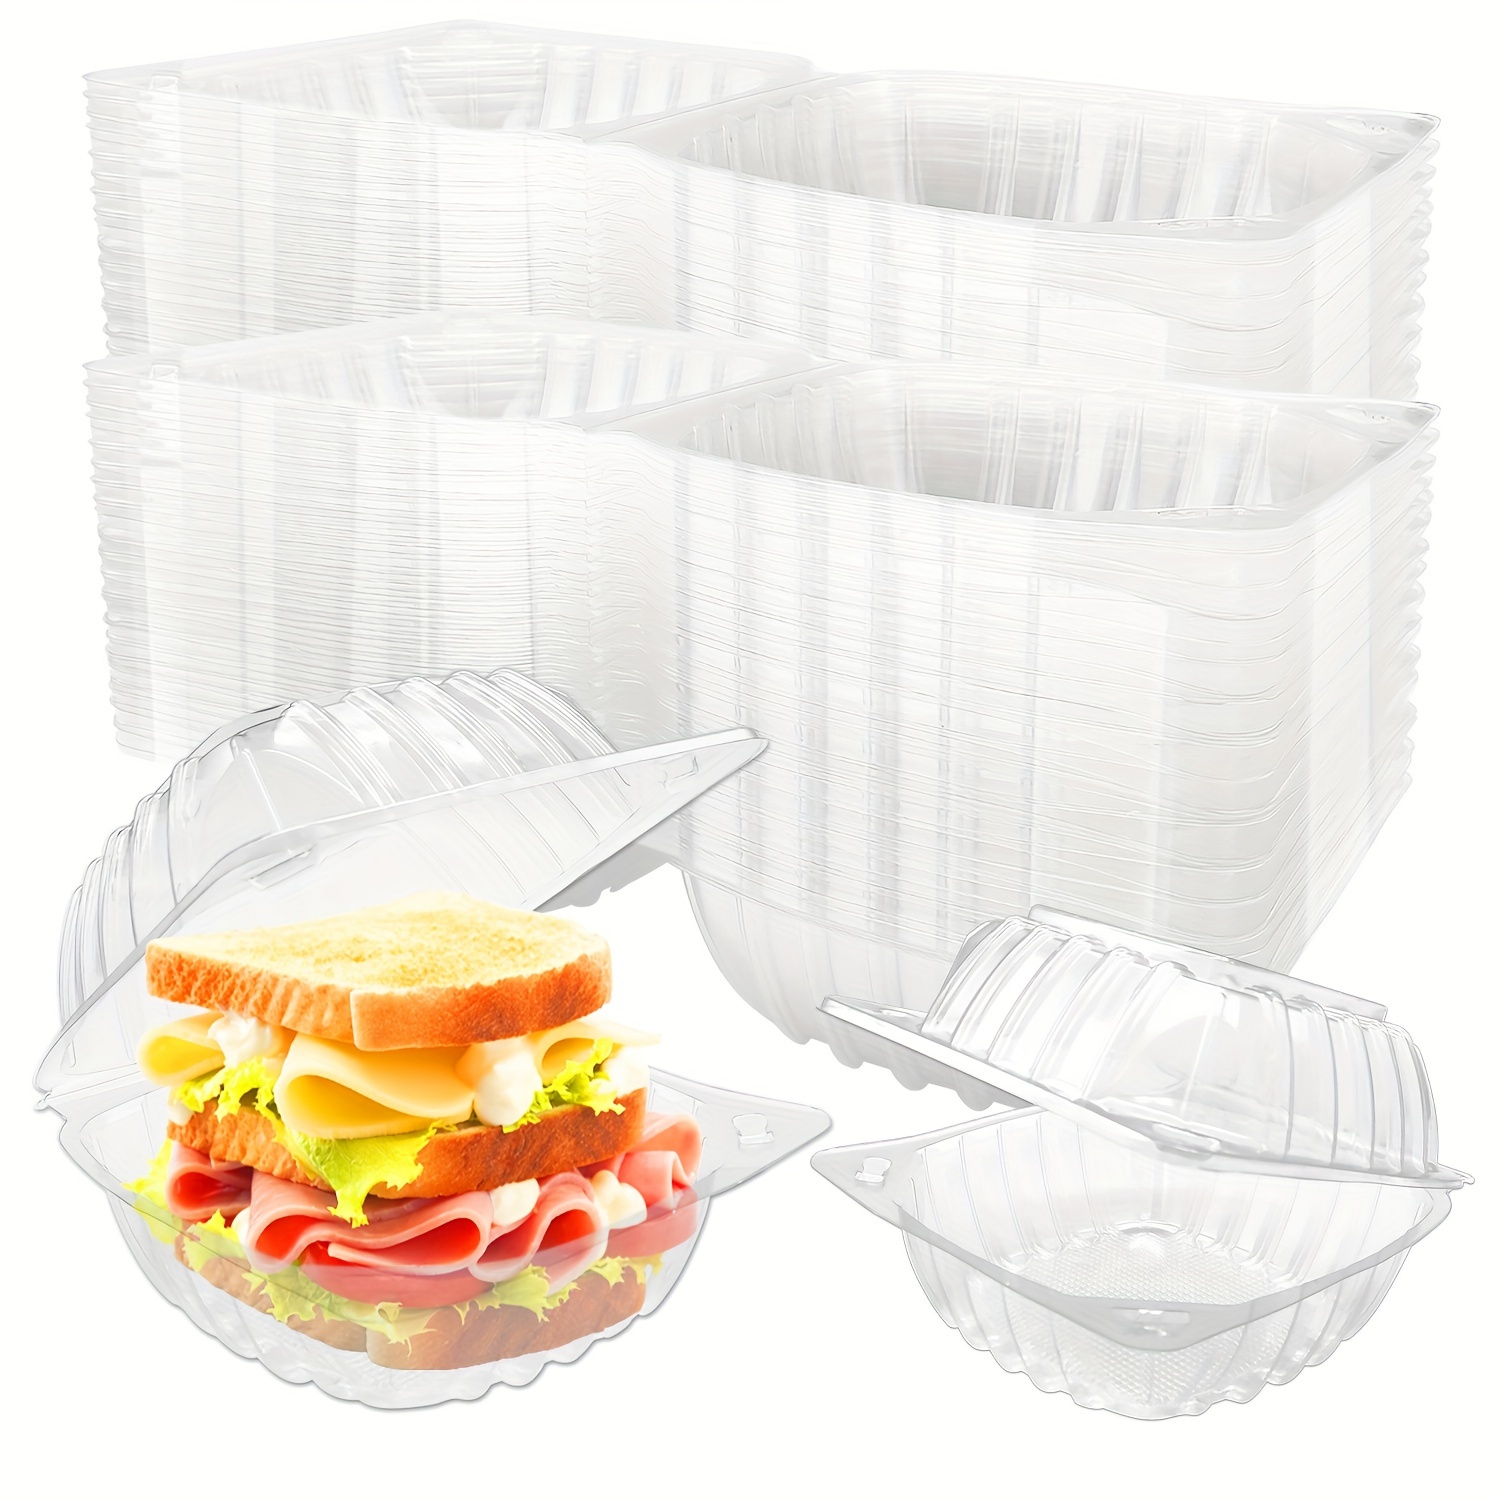  Stock Your Home - Envase de plástico para llevar alimentos y  postres, 100 unidades de 5 x 5 pulgadas, envases de plástico con bisagras,  desechables, recipiente para llevar alimentos, ensaladas, pasta